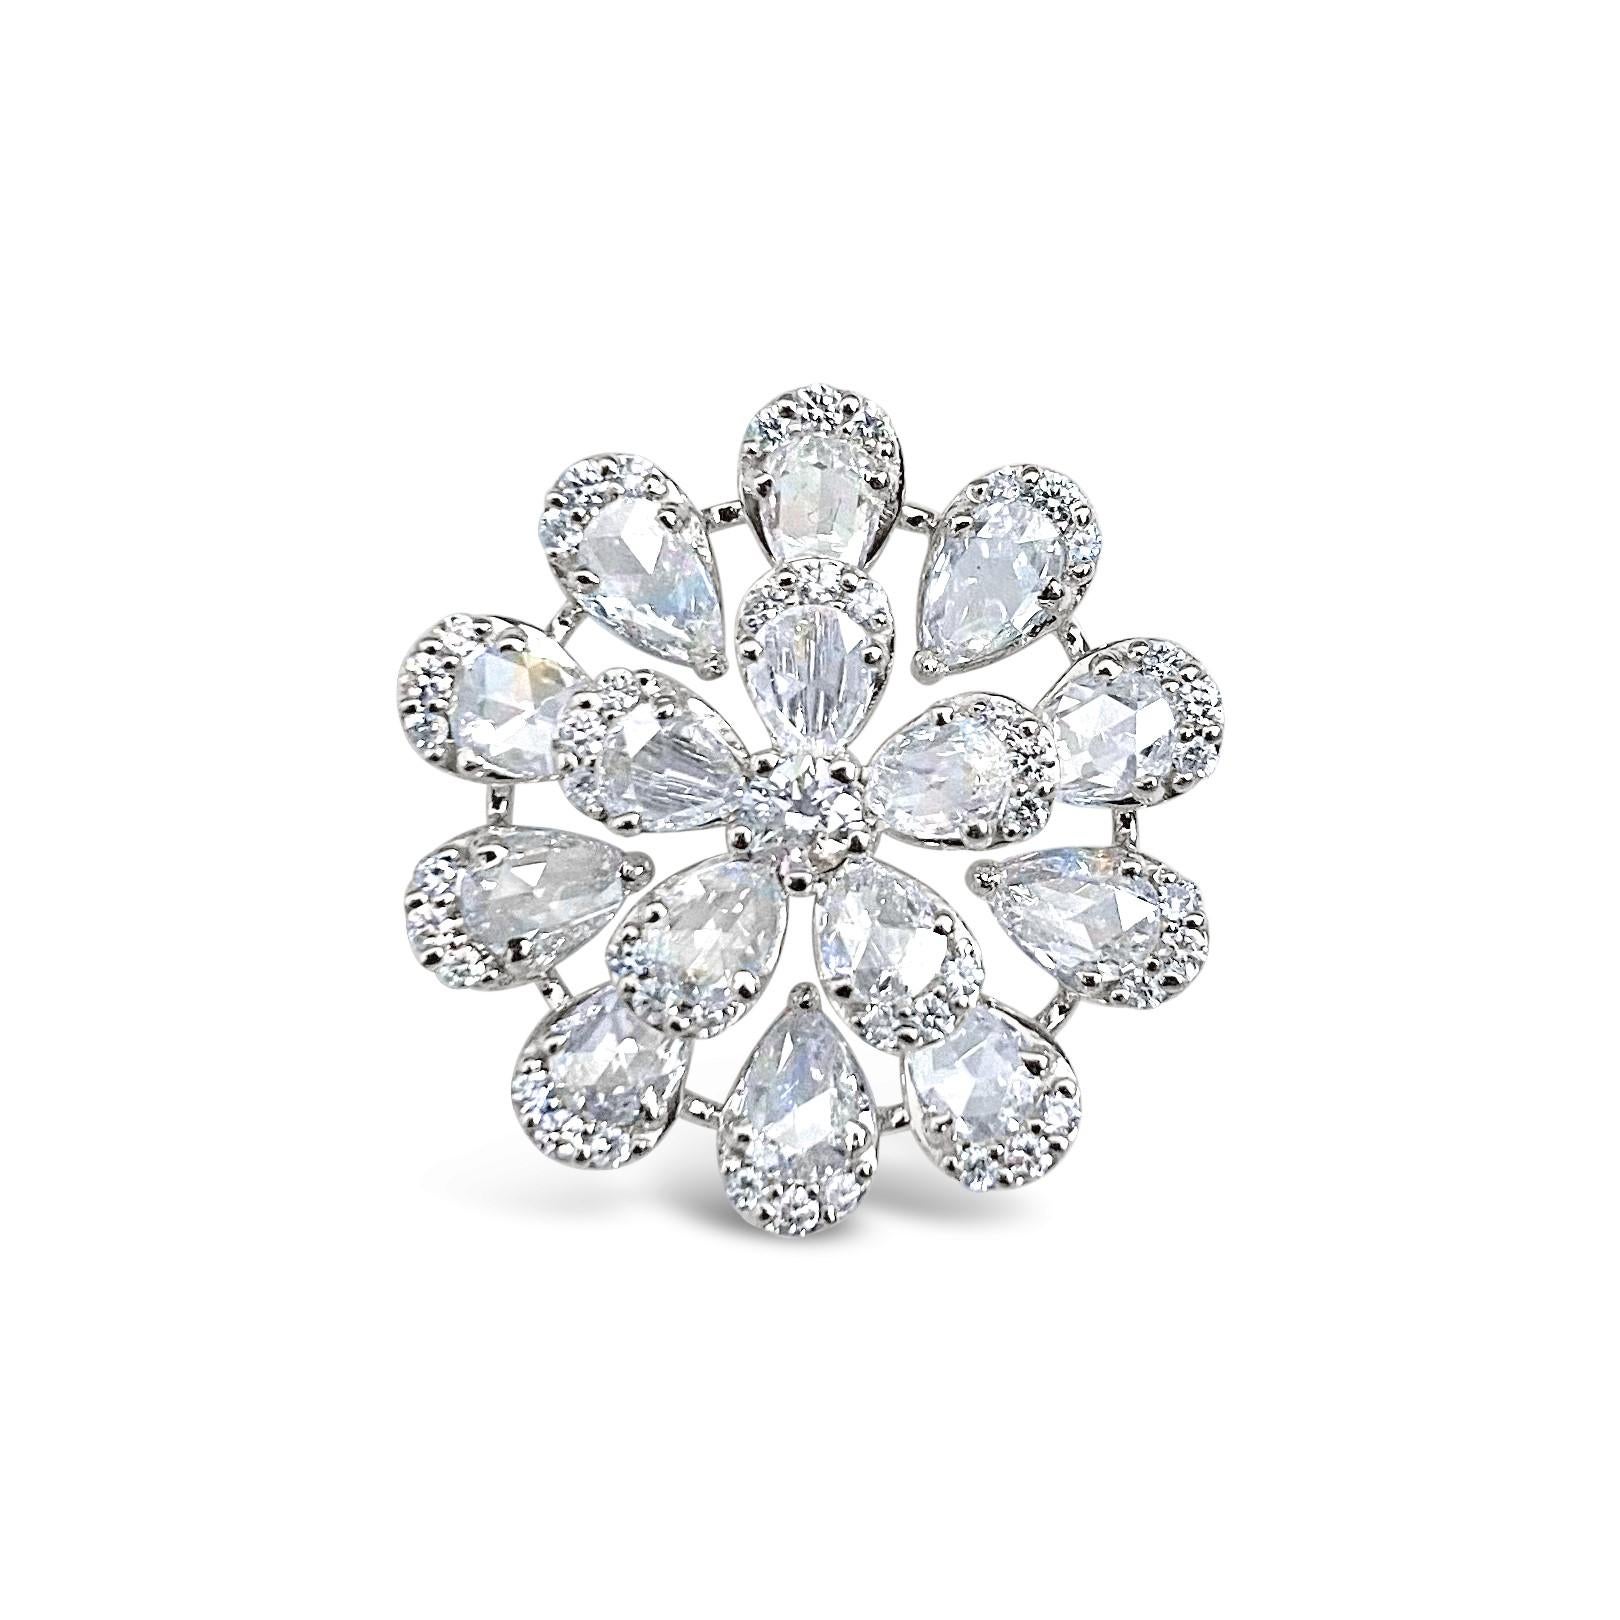 Nous vous présentons notre pendentif en diamant unique et à couper le souffle. Ce design unique est un symbole d'opulence et d'individualité qui met en valeur l'éclat intemporel des diamants avec une ingéniosité et un design brillants. 
Ce pendentif